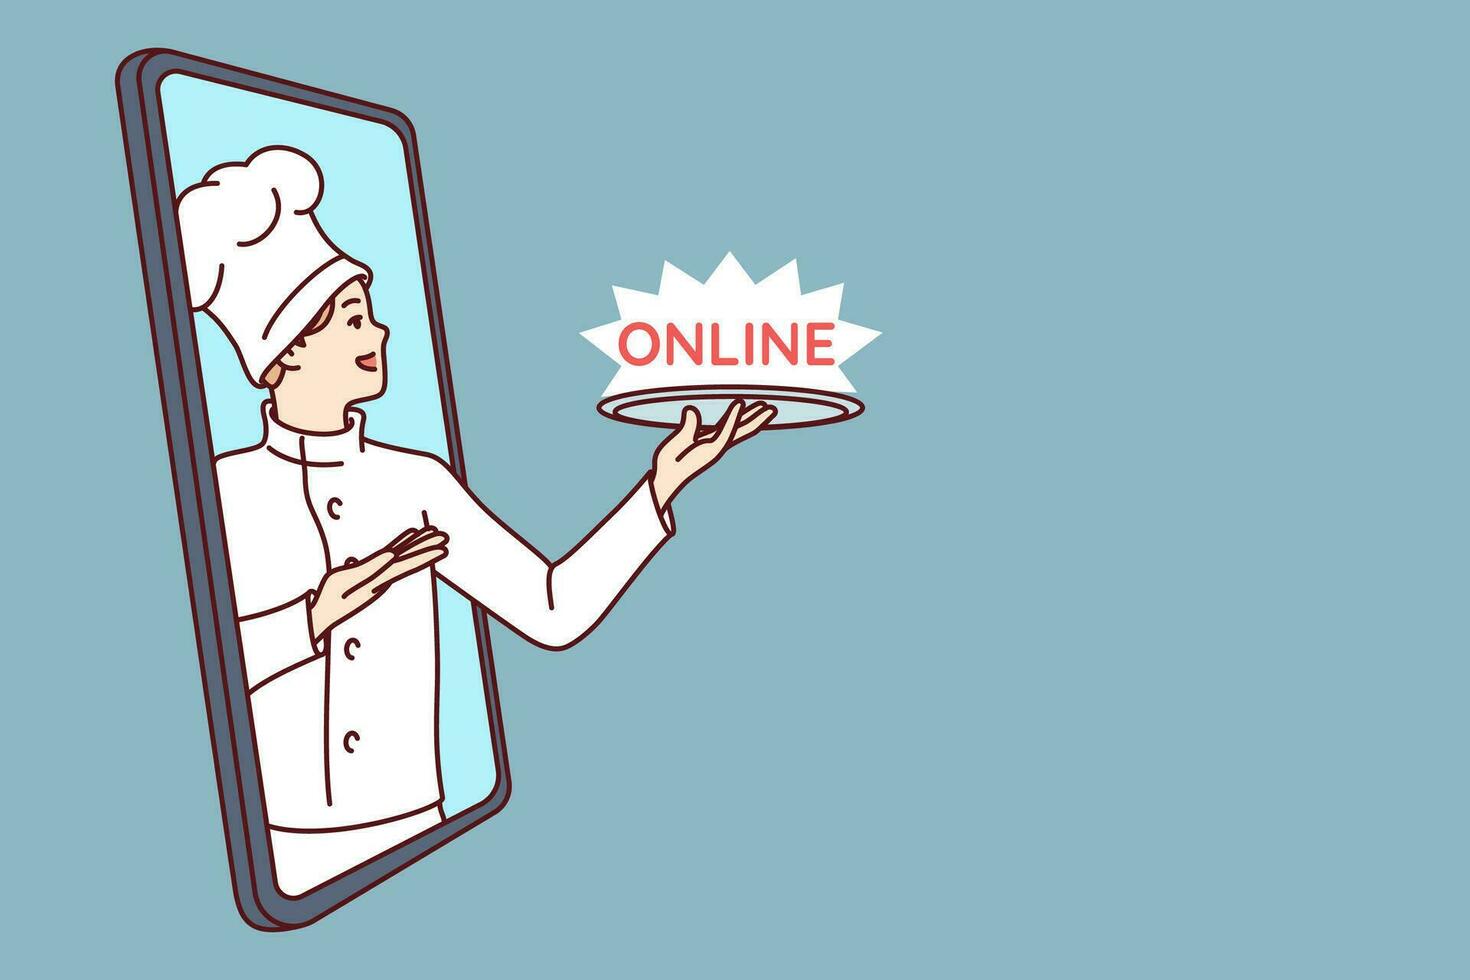 Mann Restaurant Koch mit Wort online auf Tablett sieht aus aus Telefon Bildschirm Angebot zu herunterladen Anwendung vektor